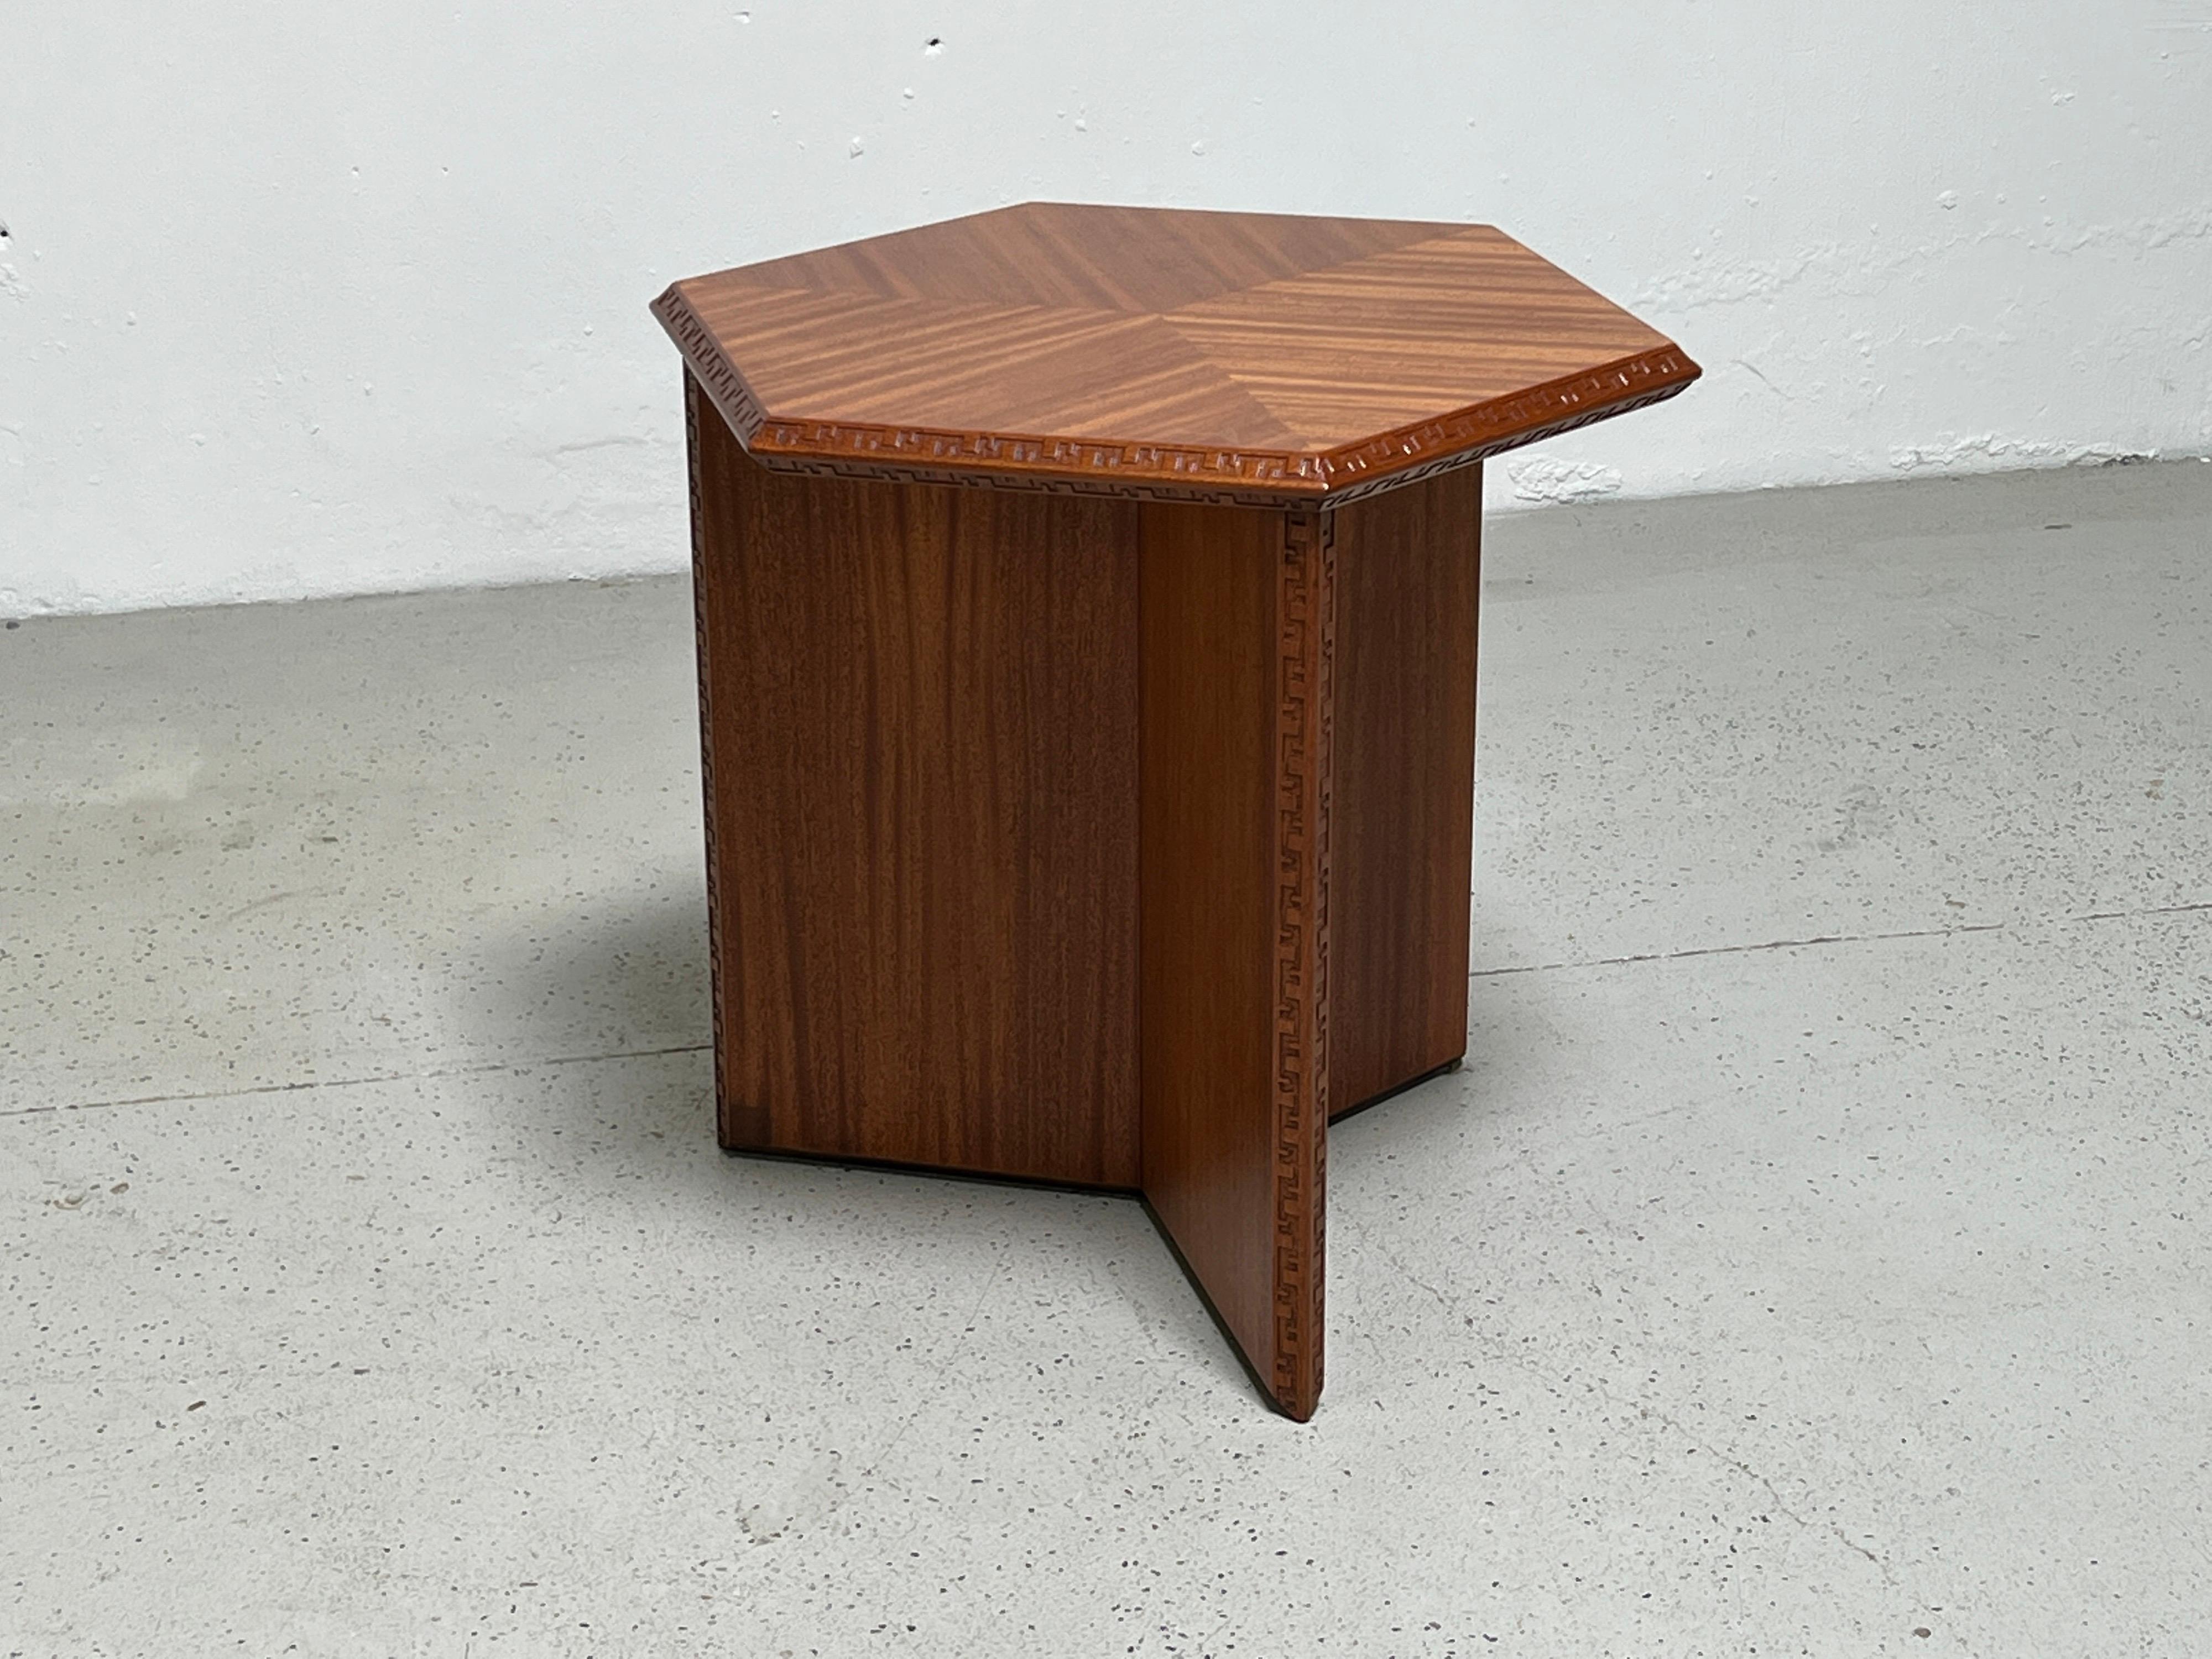 Table de lampe hexagonale en acajou conçue par Frank Lloyd Wright pour Henredon. Une version plus petite est disponible séparément.